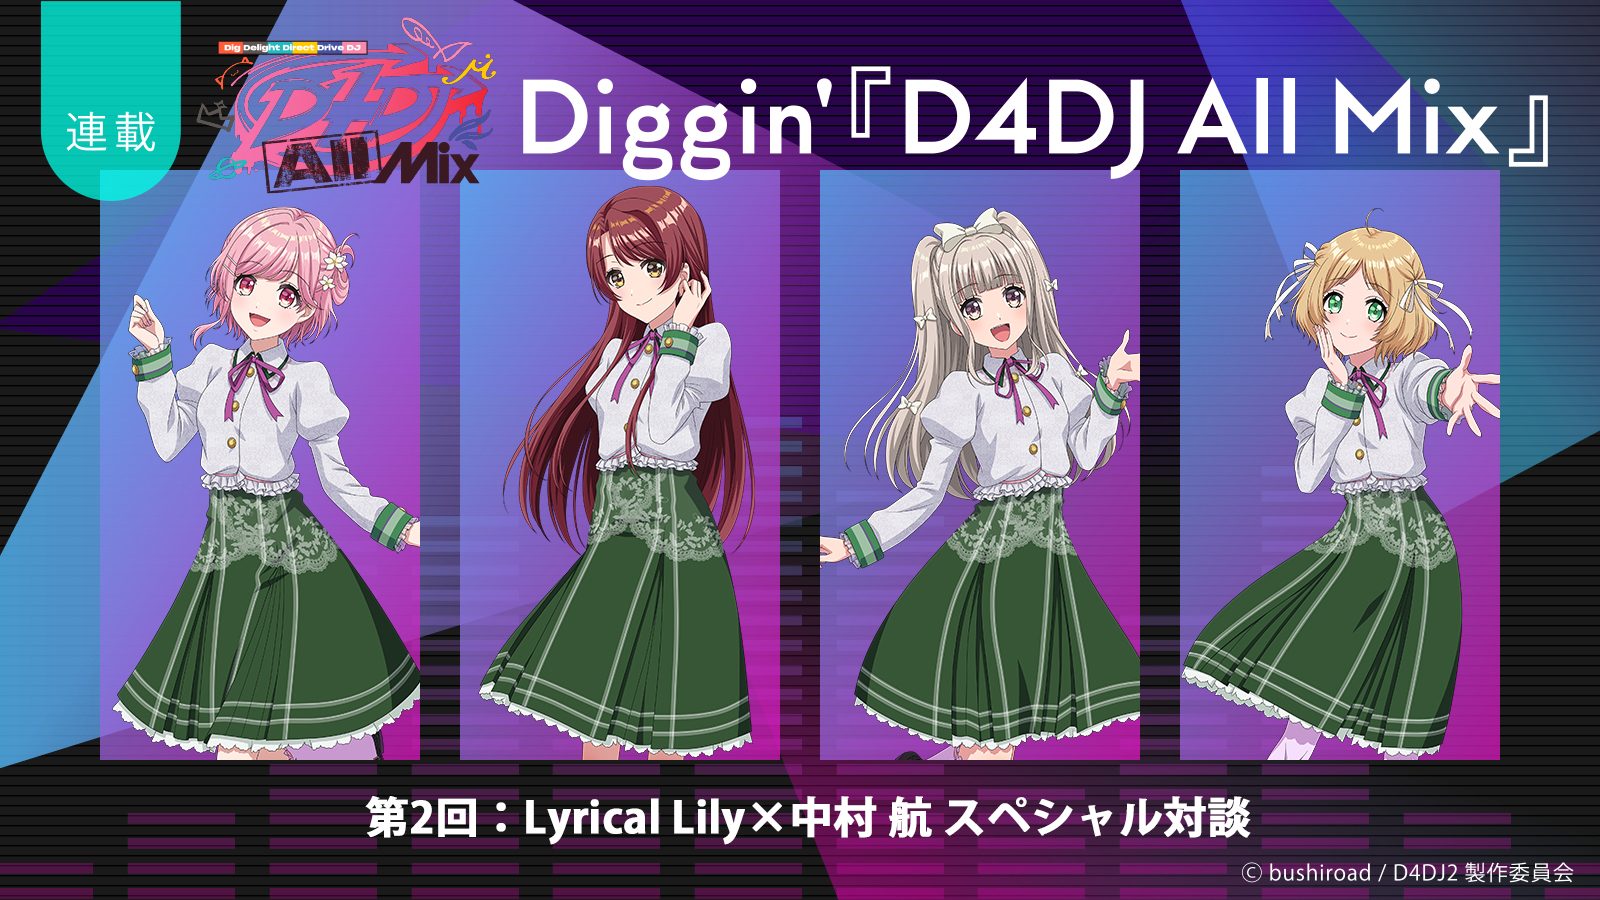 【連載】Diggin’『D4DJ All Mix』第2回：成長の先にある、新たな始まりの一歩――Lyrical Lily×中村 航スペシャル対談